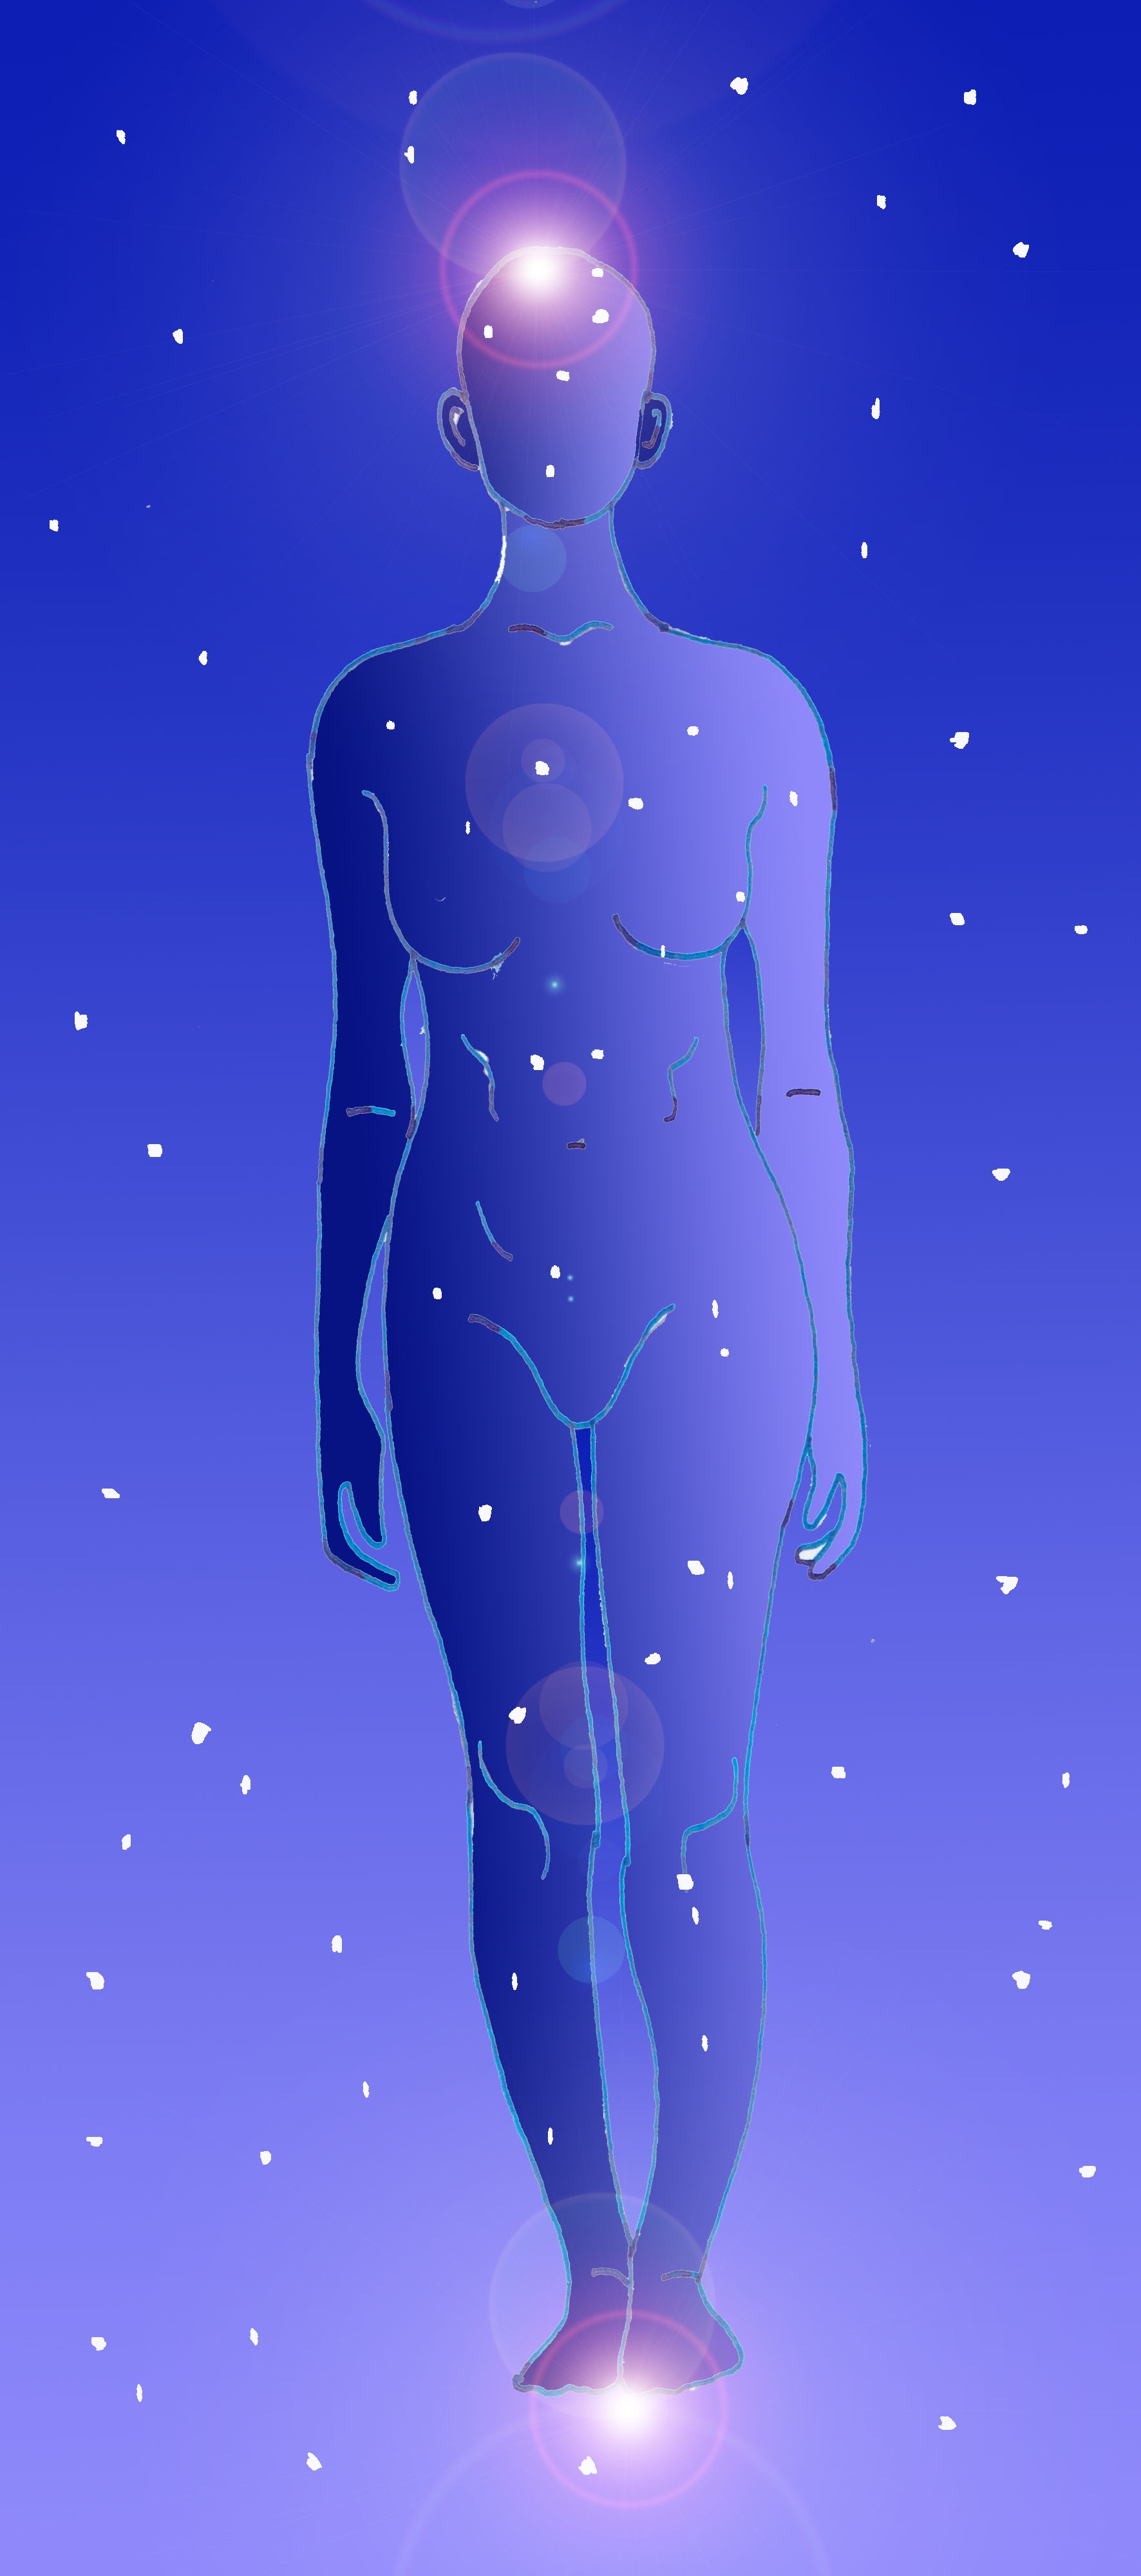 Immagine di una sagoma umana (Per leggerne la descrizione proseguire nel link). Corpo di donna stilizzato su sfondo di cielo stellato.